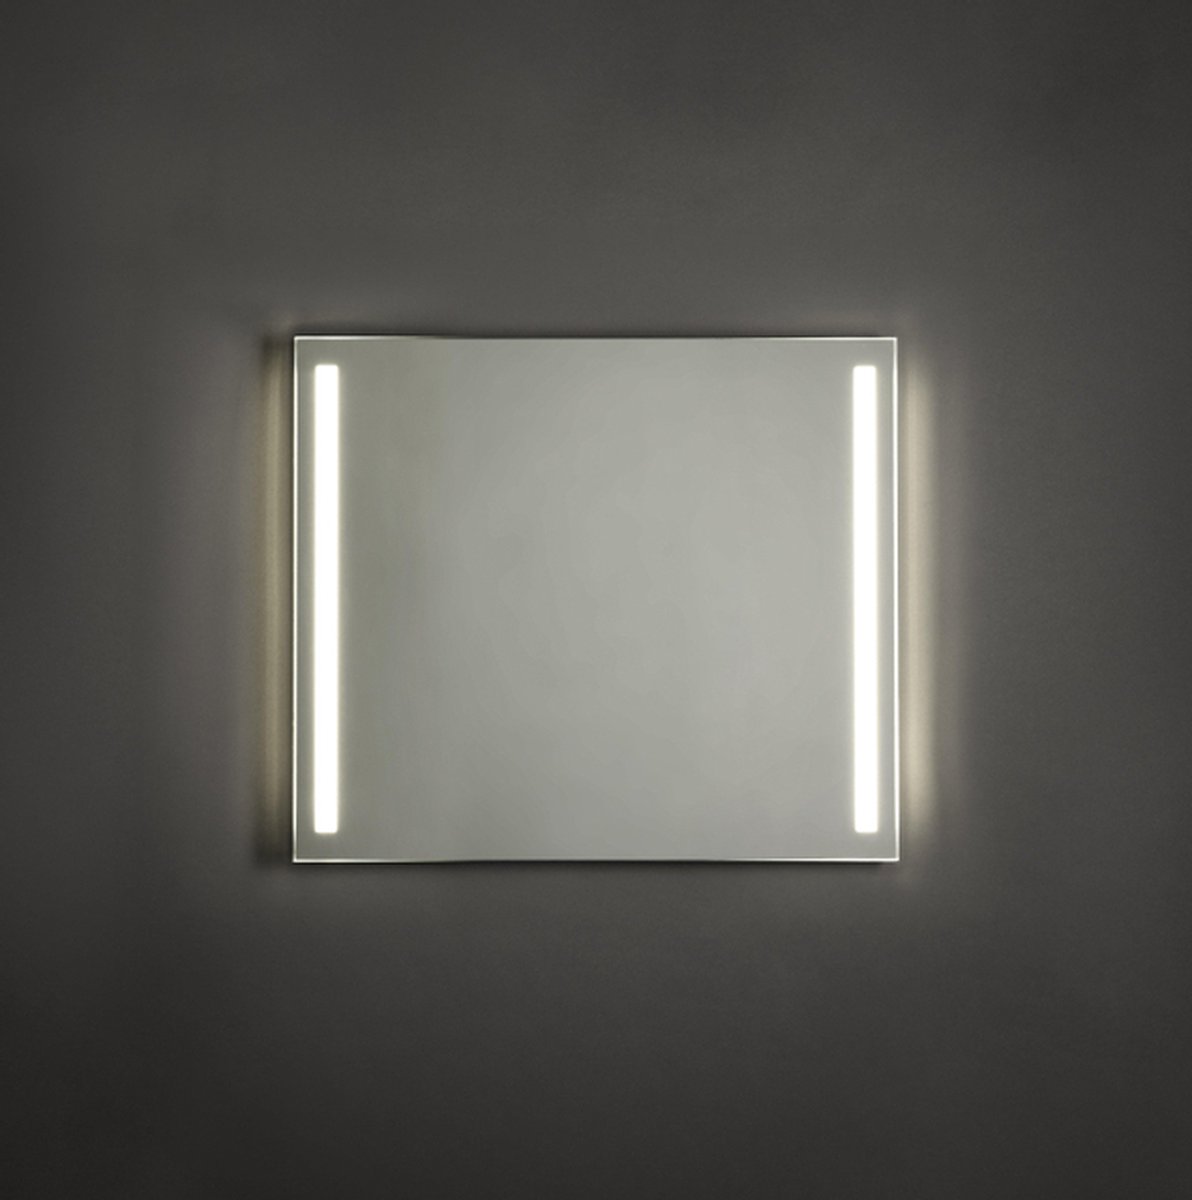 Adema Squared badkamerspiegel - 80x70cm - Verlichting aan zijkanten - LED met spiegelverwarming en sensor schakelaar